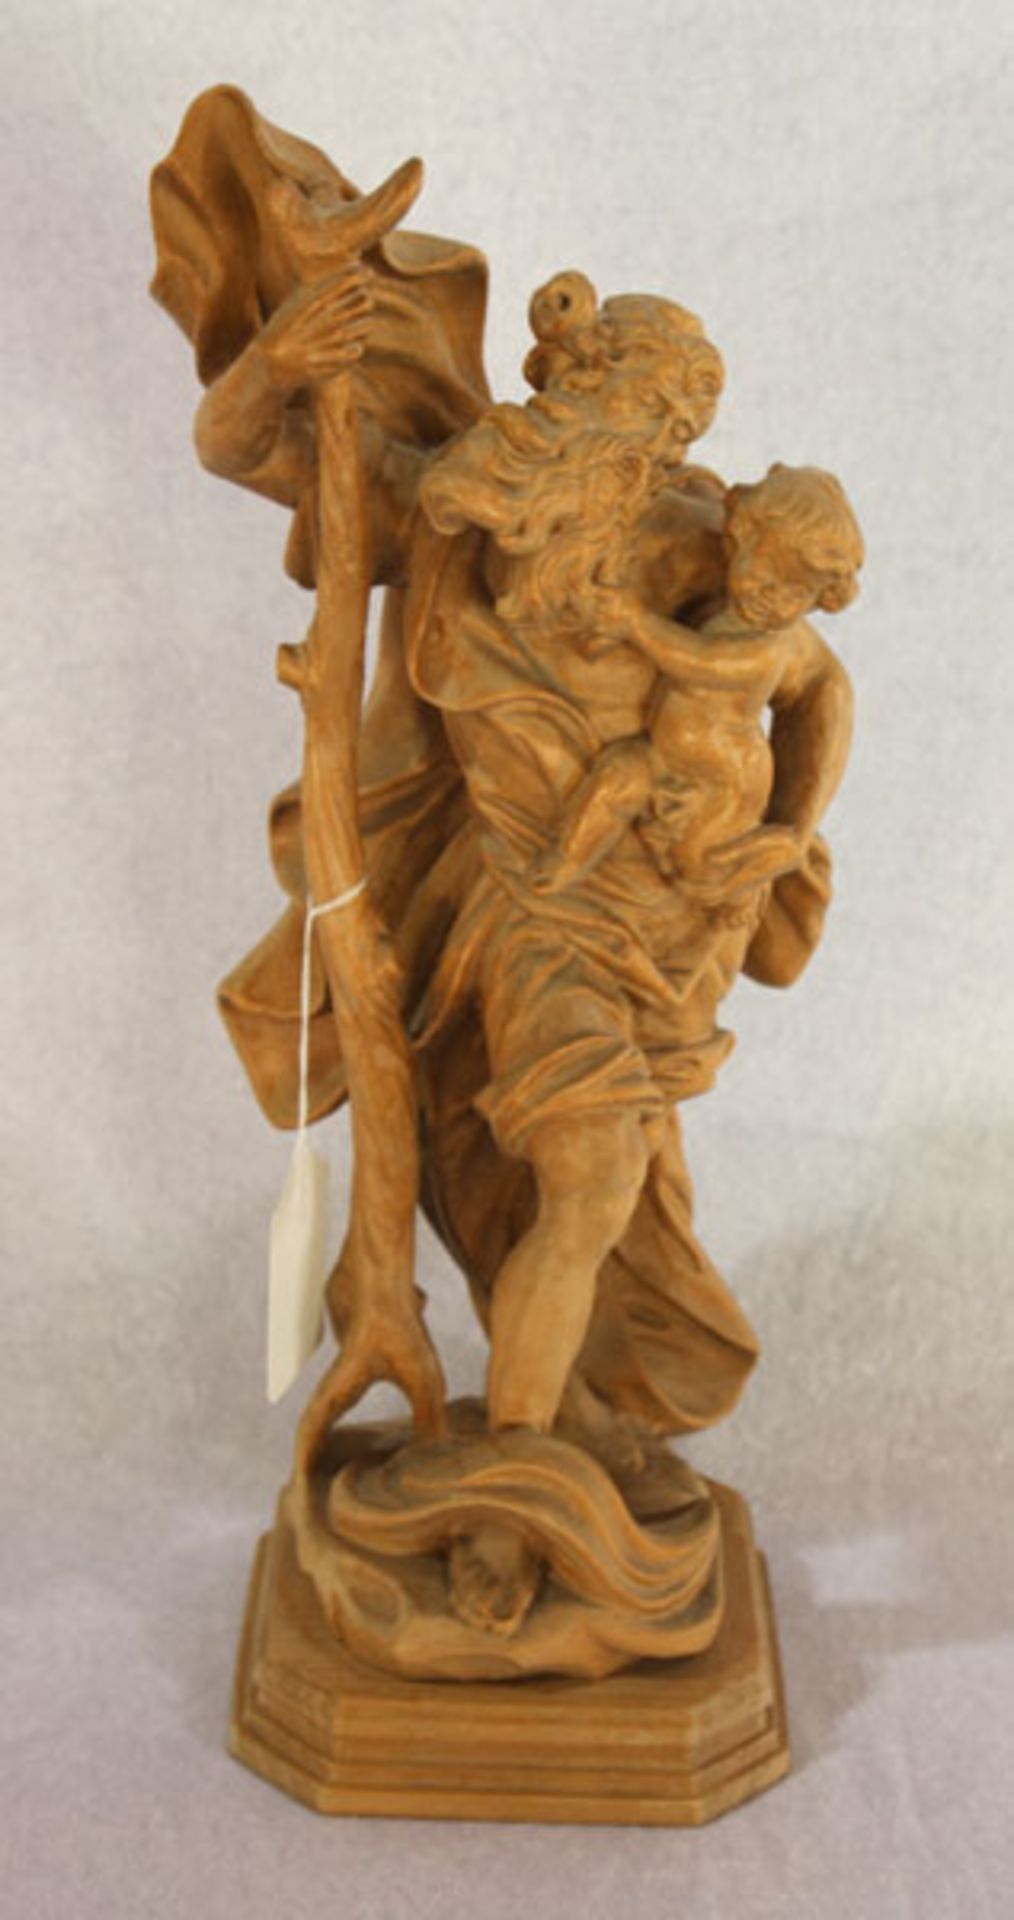 Holz Figurenskulptur 'Hl. Christophorus', gebeizt, H 32,5 cm